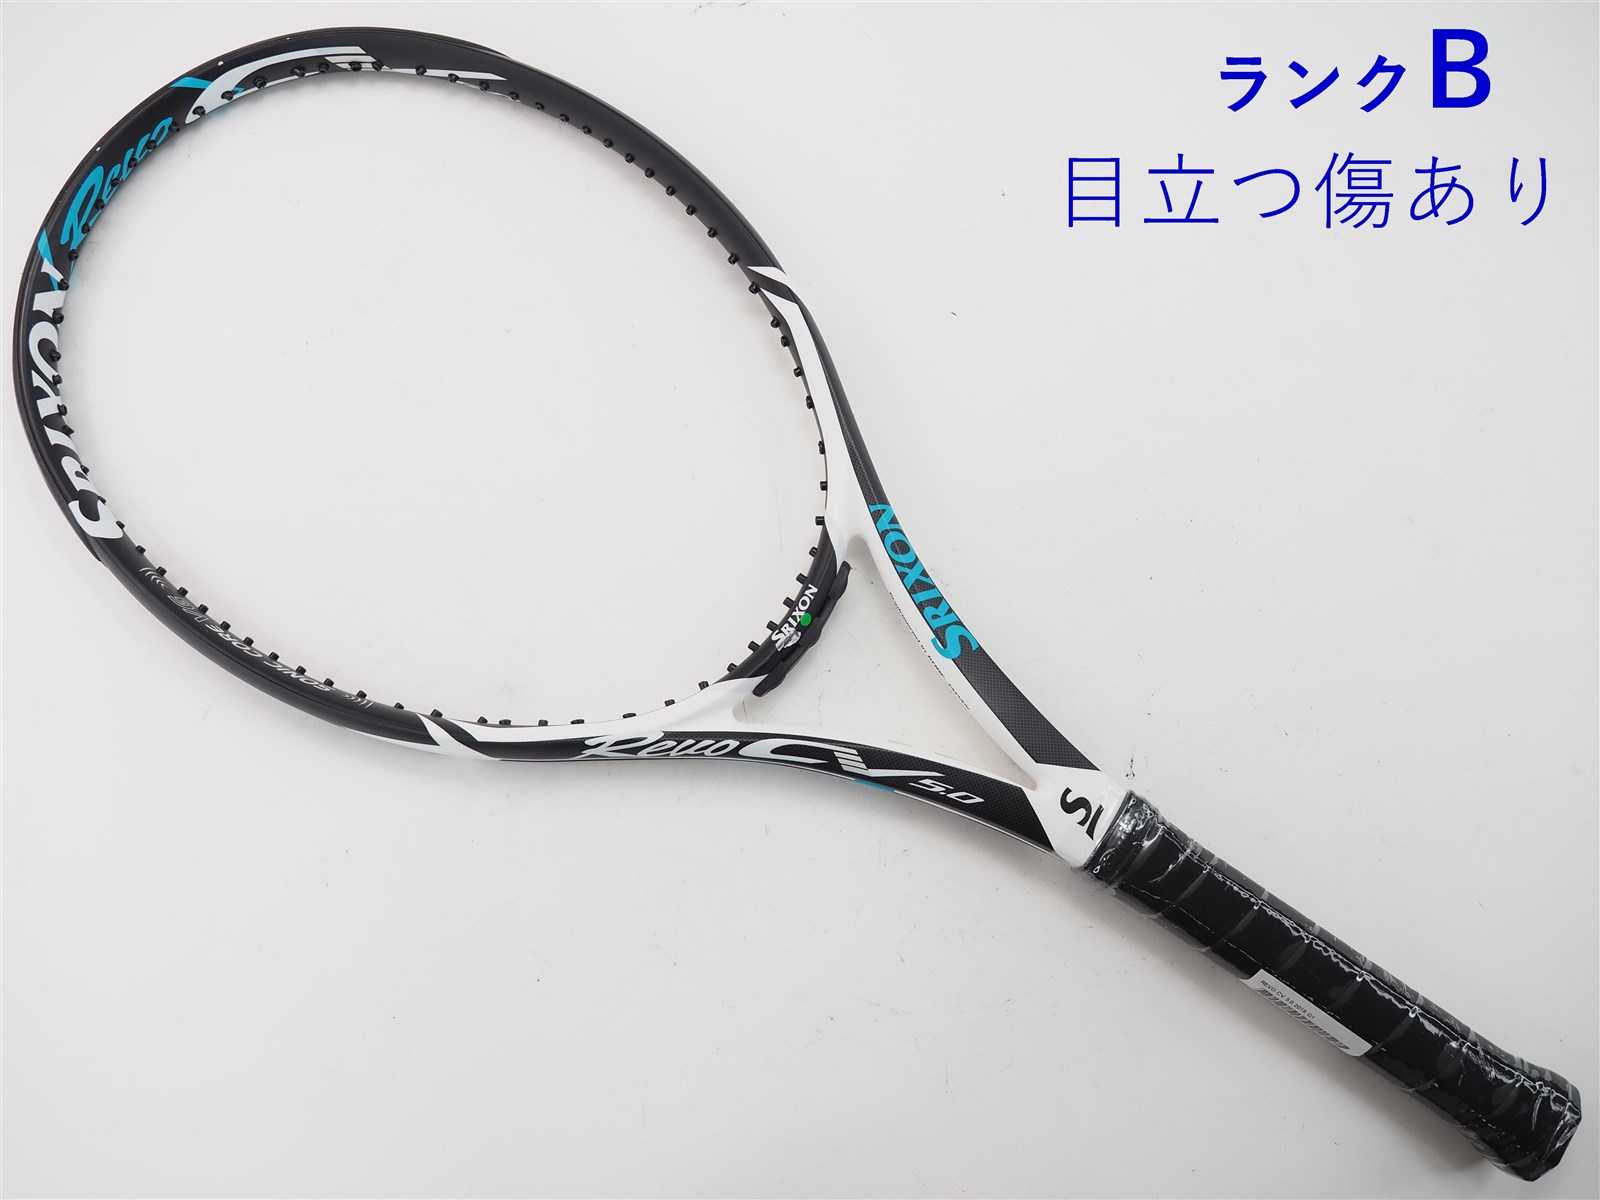 テニスラケット スリクソン レヴォ CV 5.0 OS 2018年モデル (G2)SRIXON